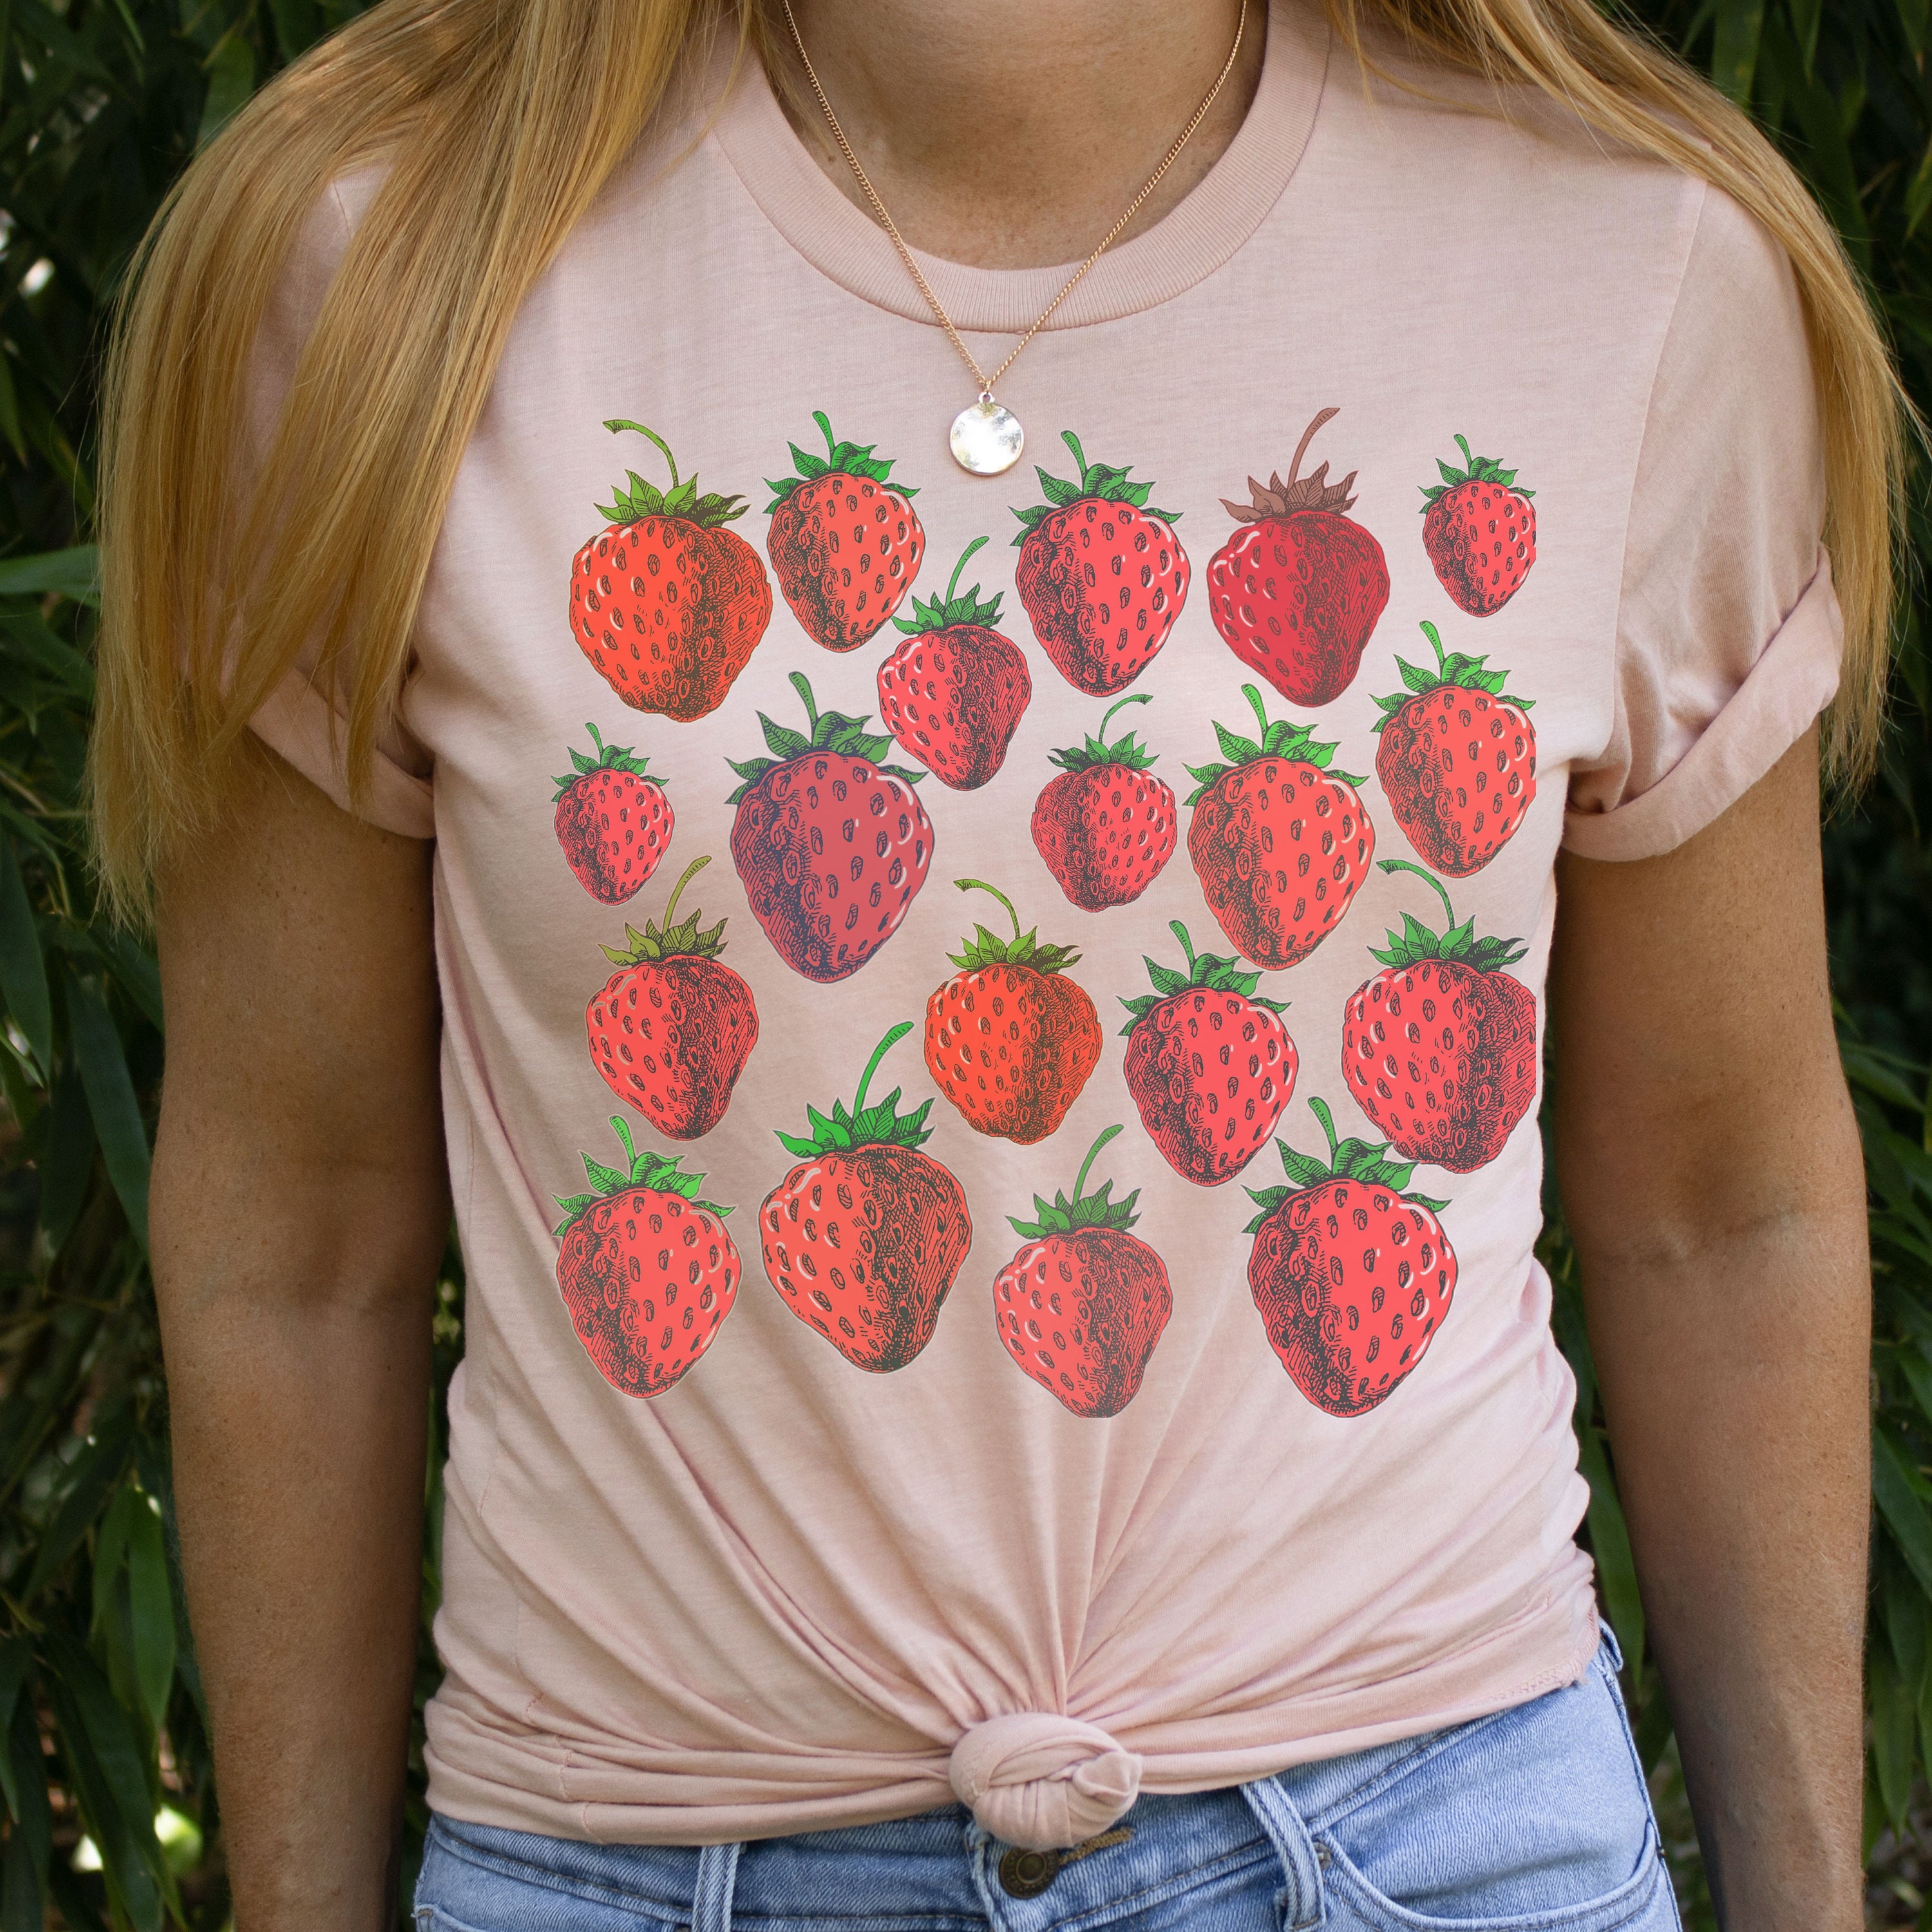 Strawberry shirt Strawberry clothing Cottagecore Aesthetic | Etsy